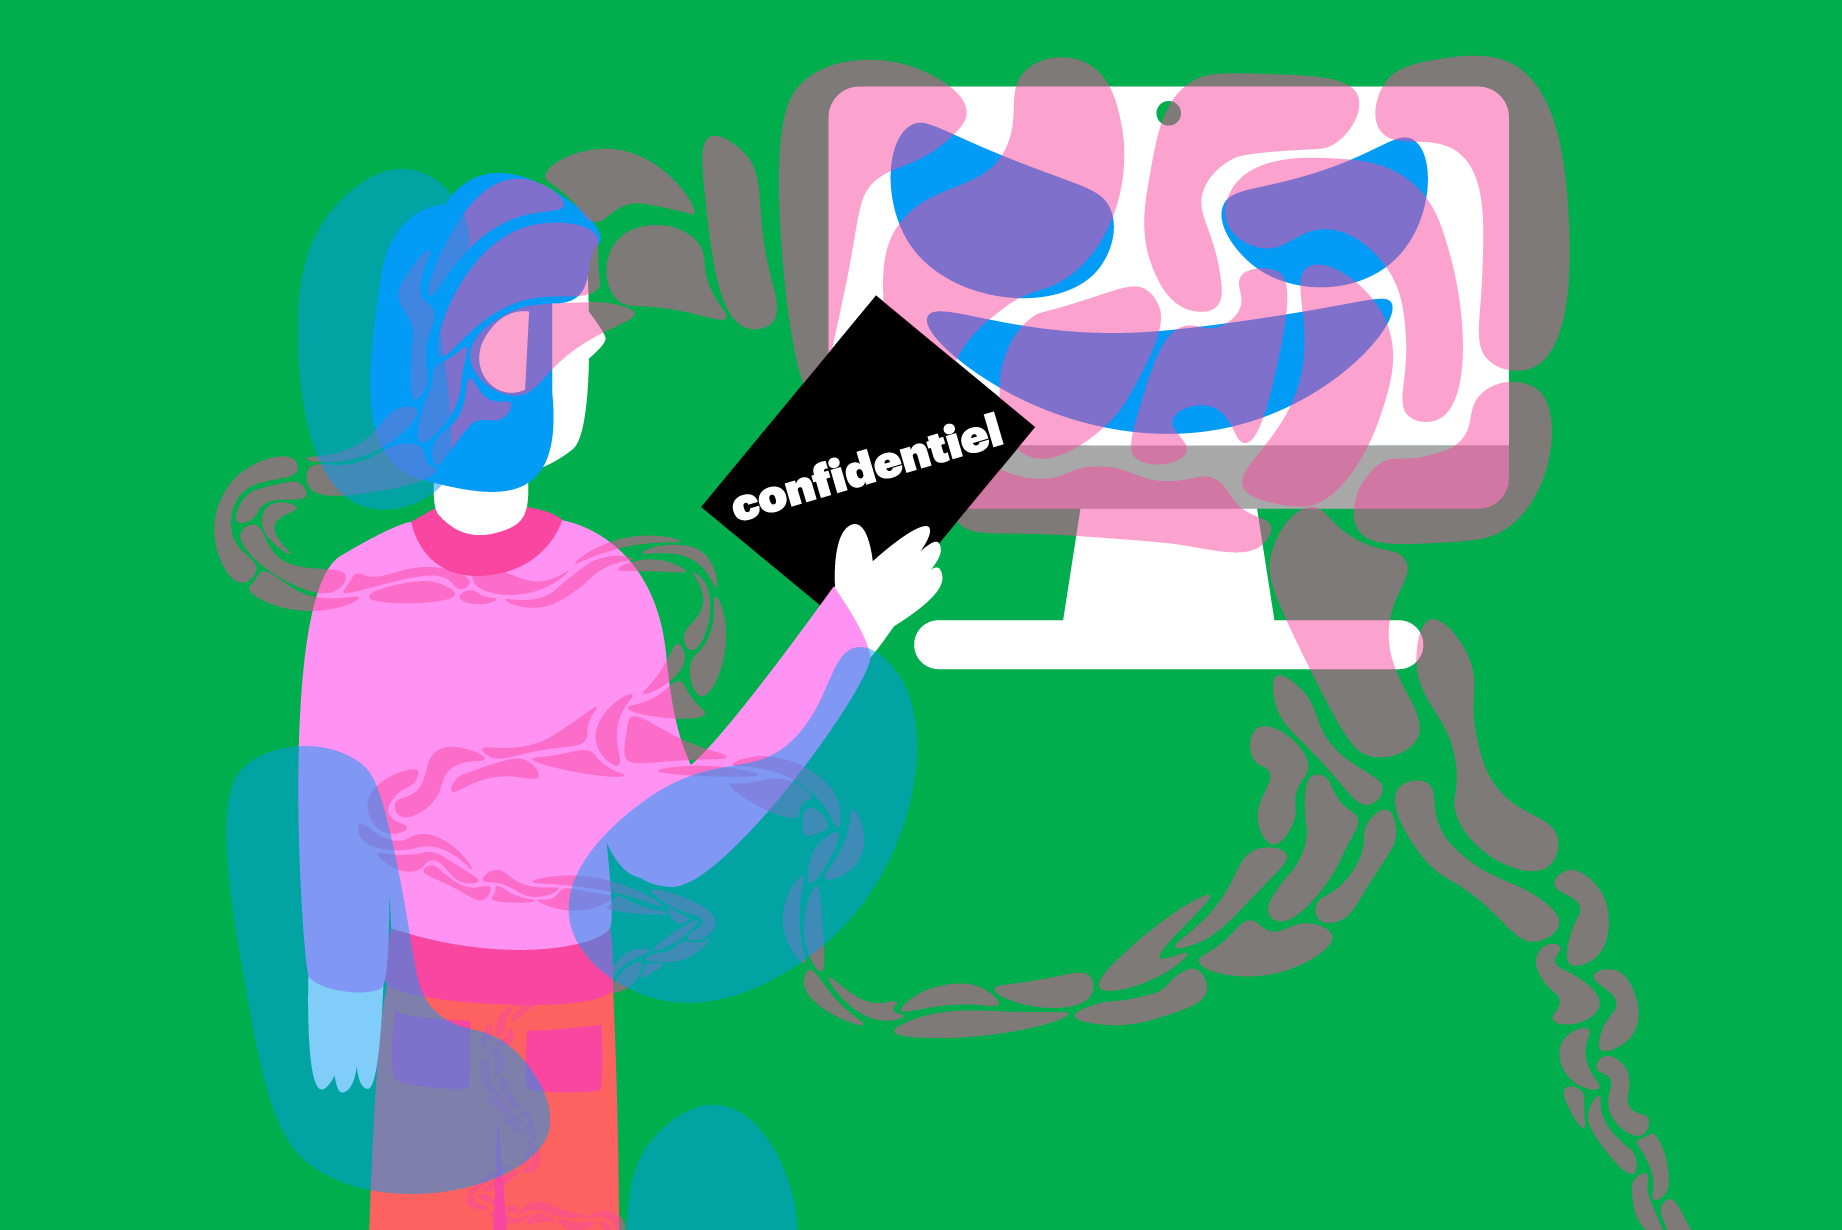 Illustration: un personnage au premier plan tend un document marqué "Confidentiel" vers un écran d'ordinateur dessiné en manière de visage d'ogre, monstrueux. Cet ordinateur étend des sortes de tentacules autour du personnage.